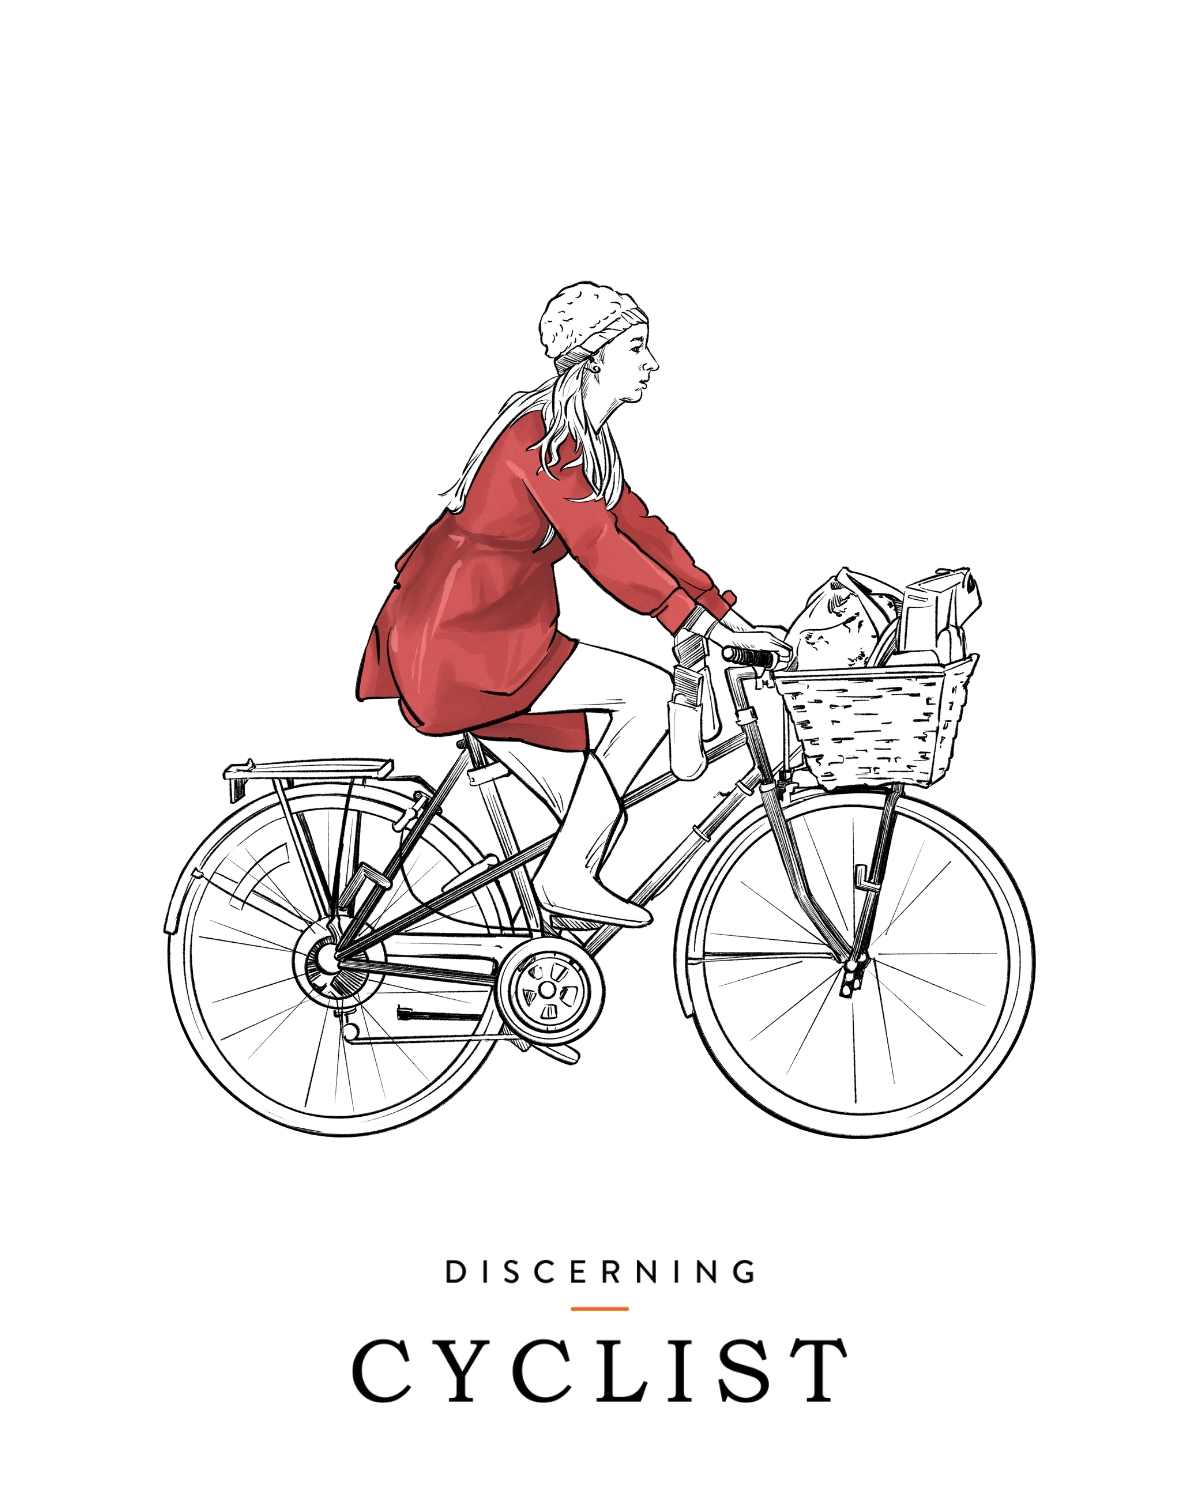 Lady cyclist illustration